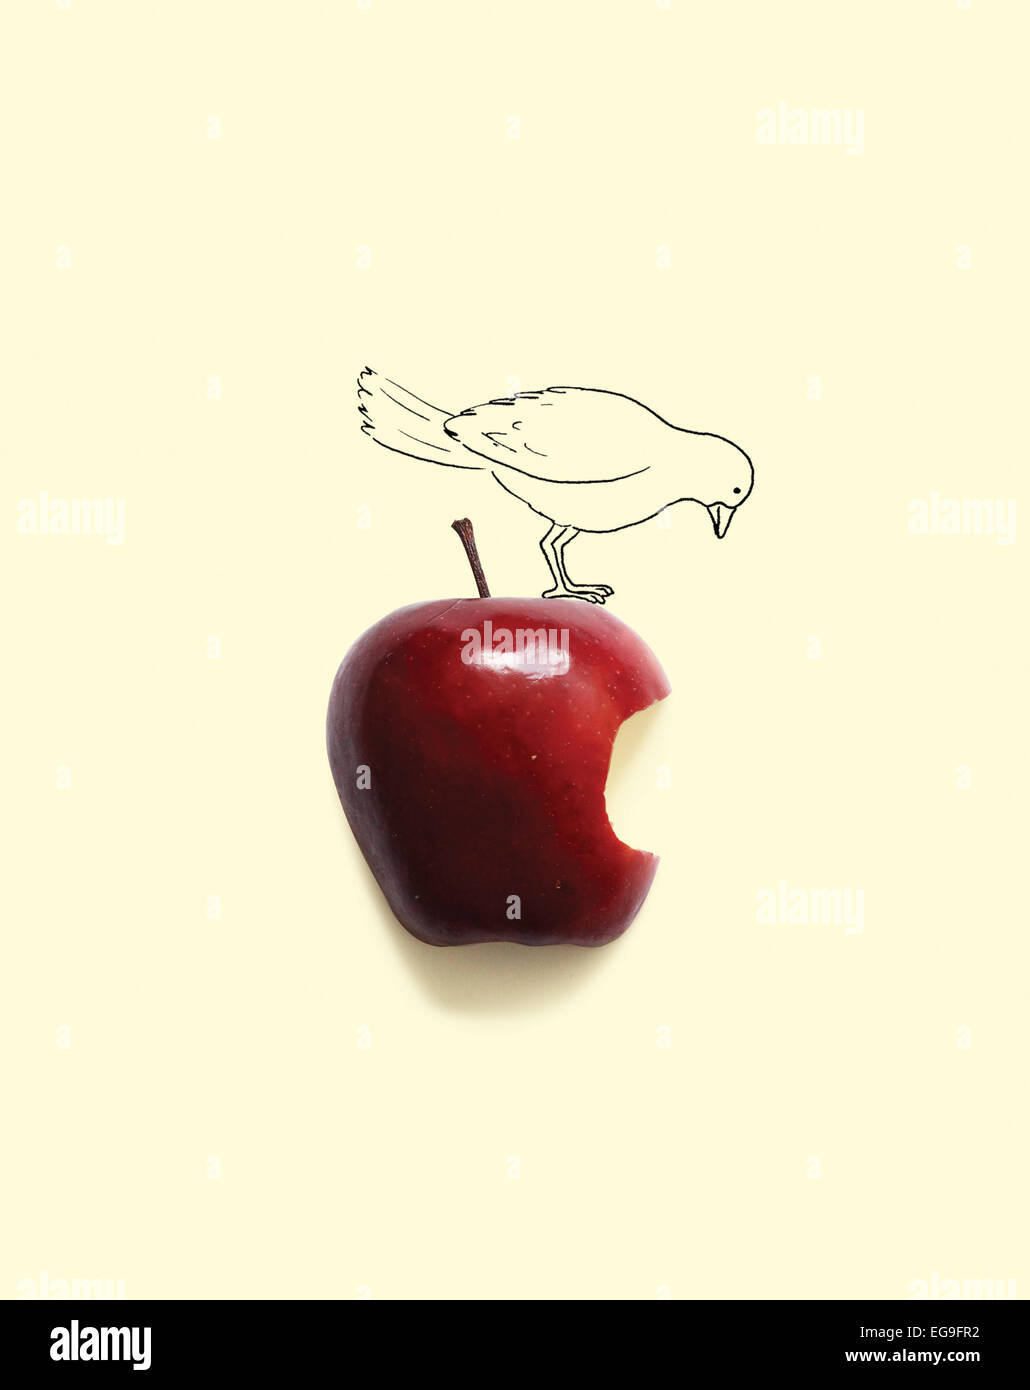 Oiseau sur conceptuel apple avec un morceau manquant Banque D'Images